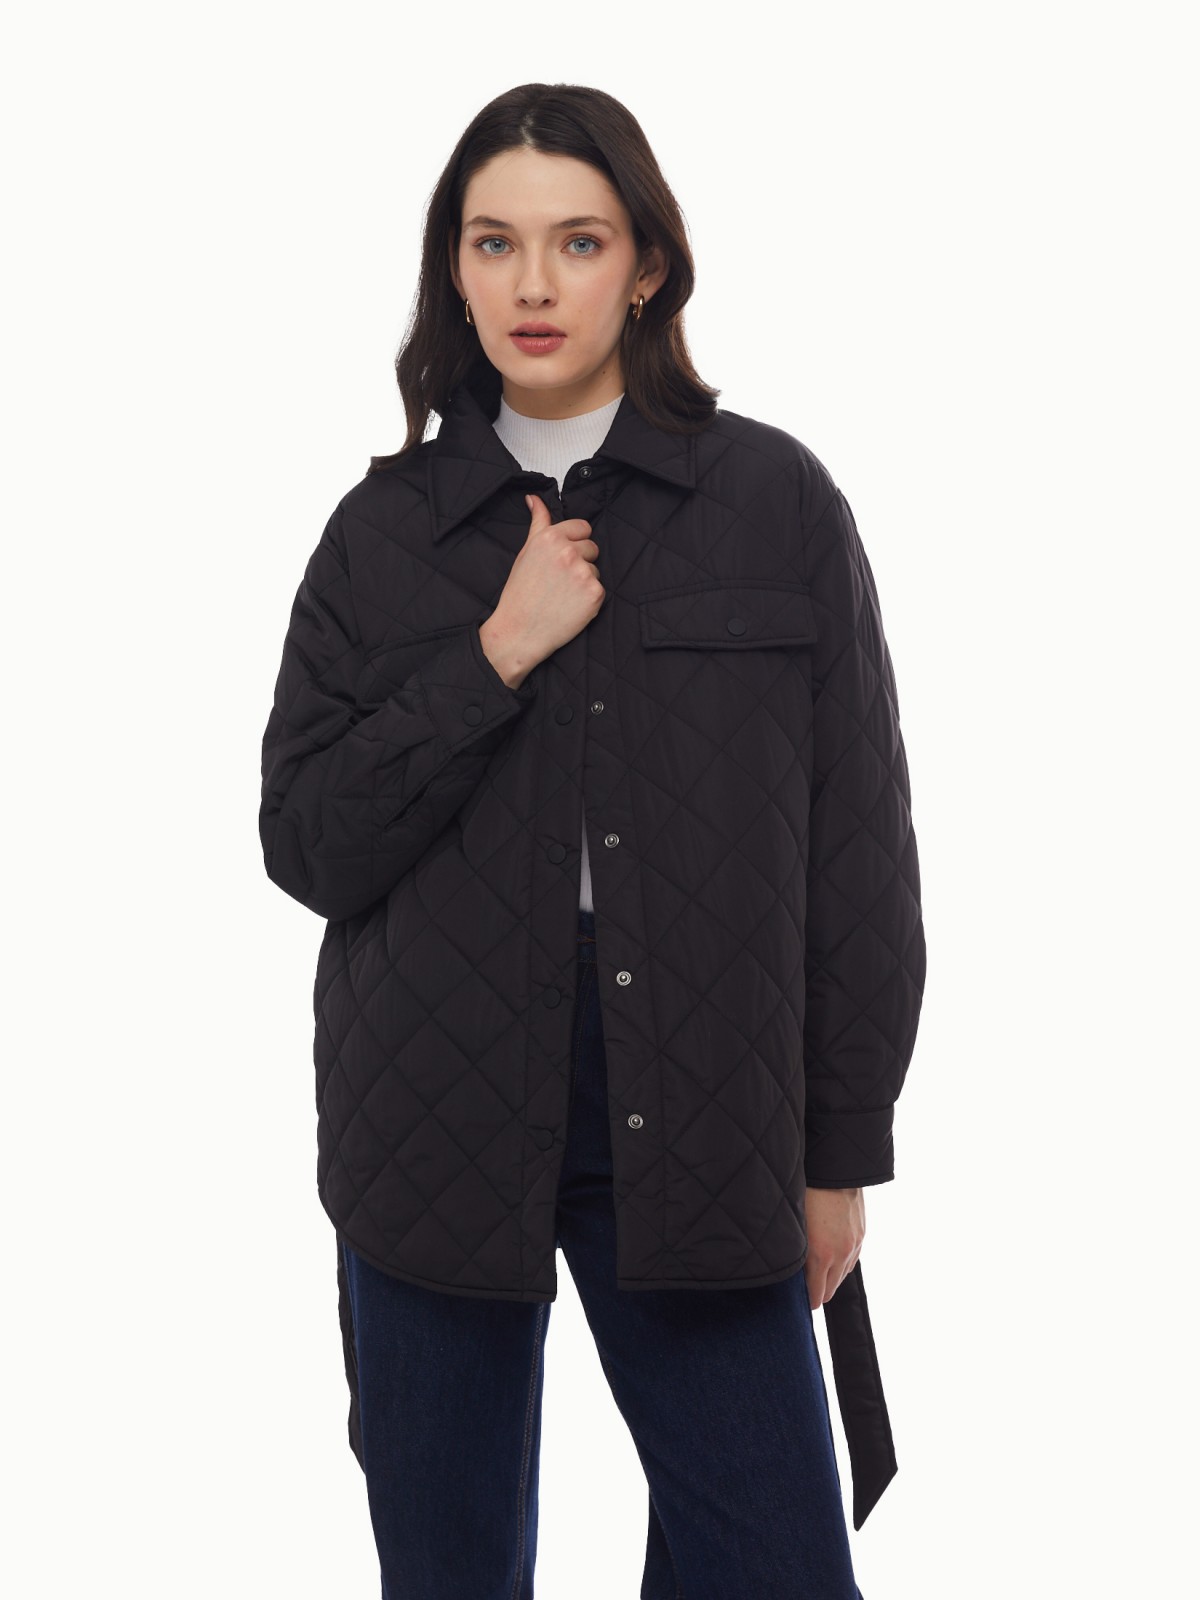 Утеплённая стёганая куртка-рубашка на синтепоне с поясом zolla 024135102134, цвет черный, размер XS - фото 1